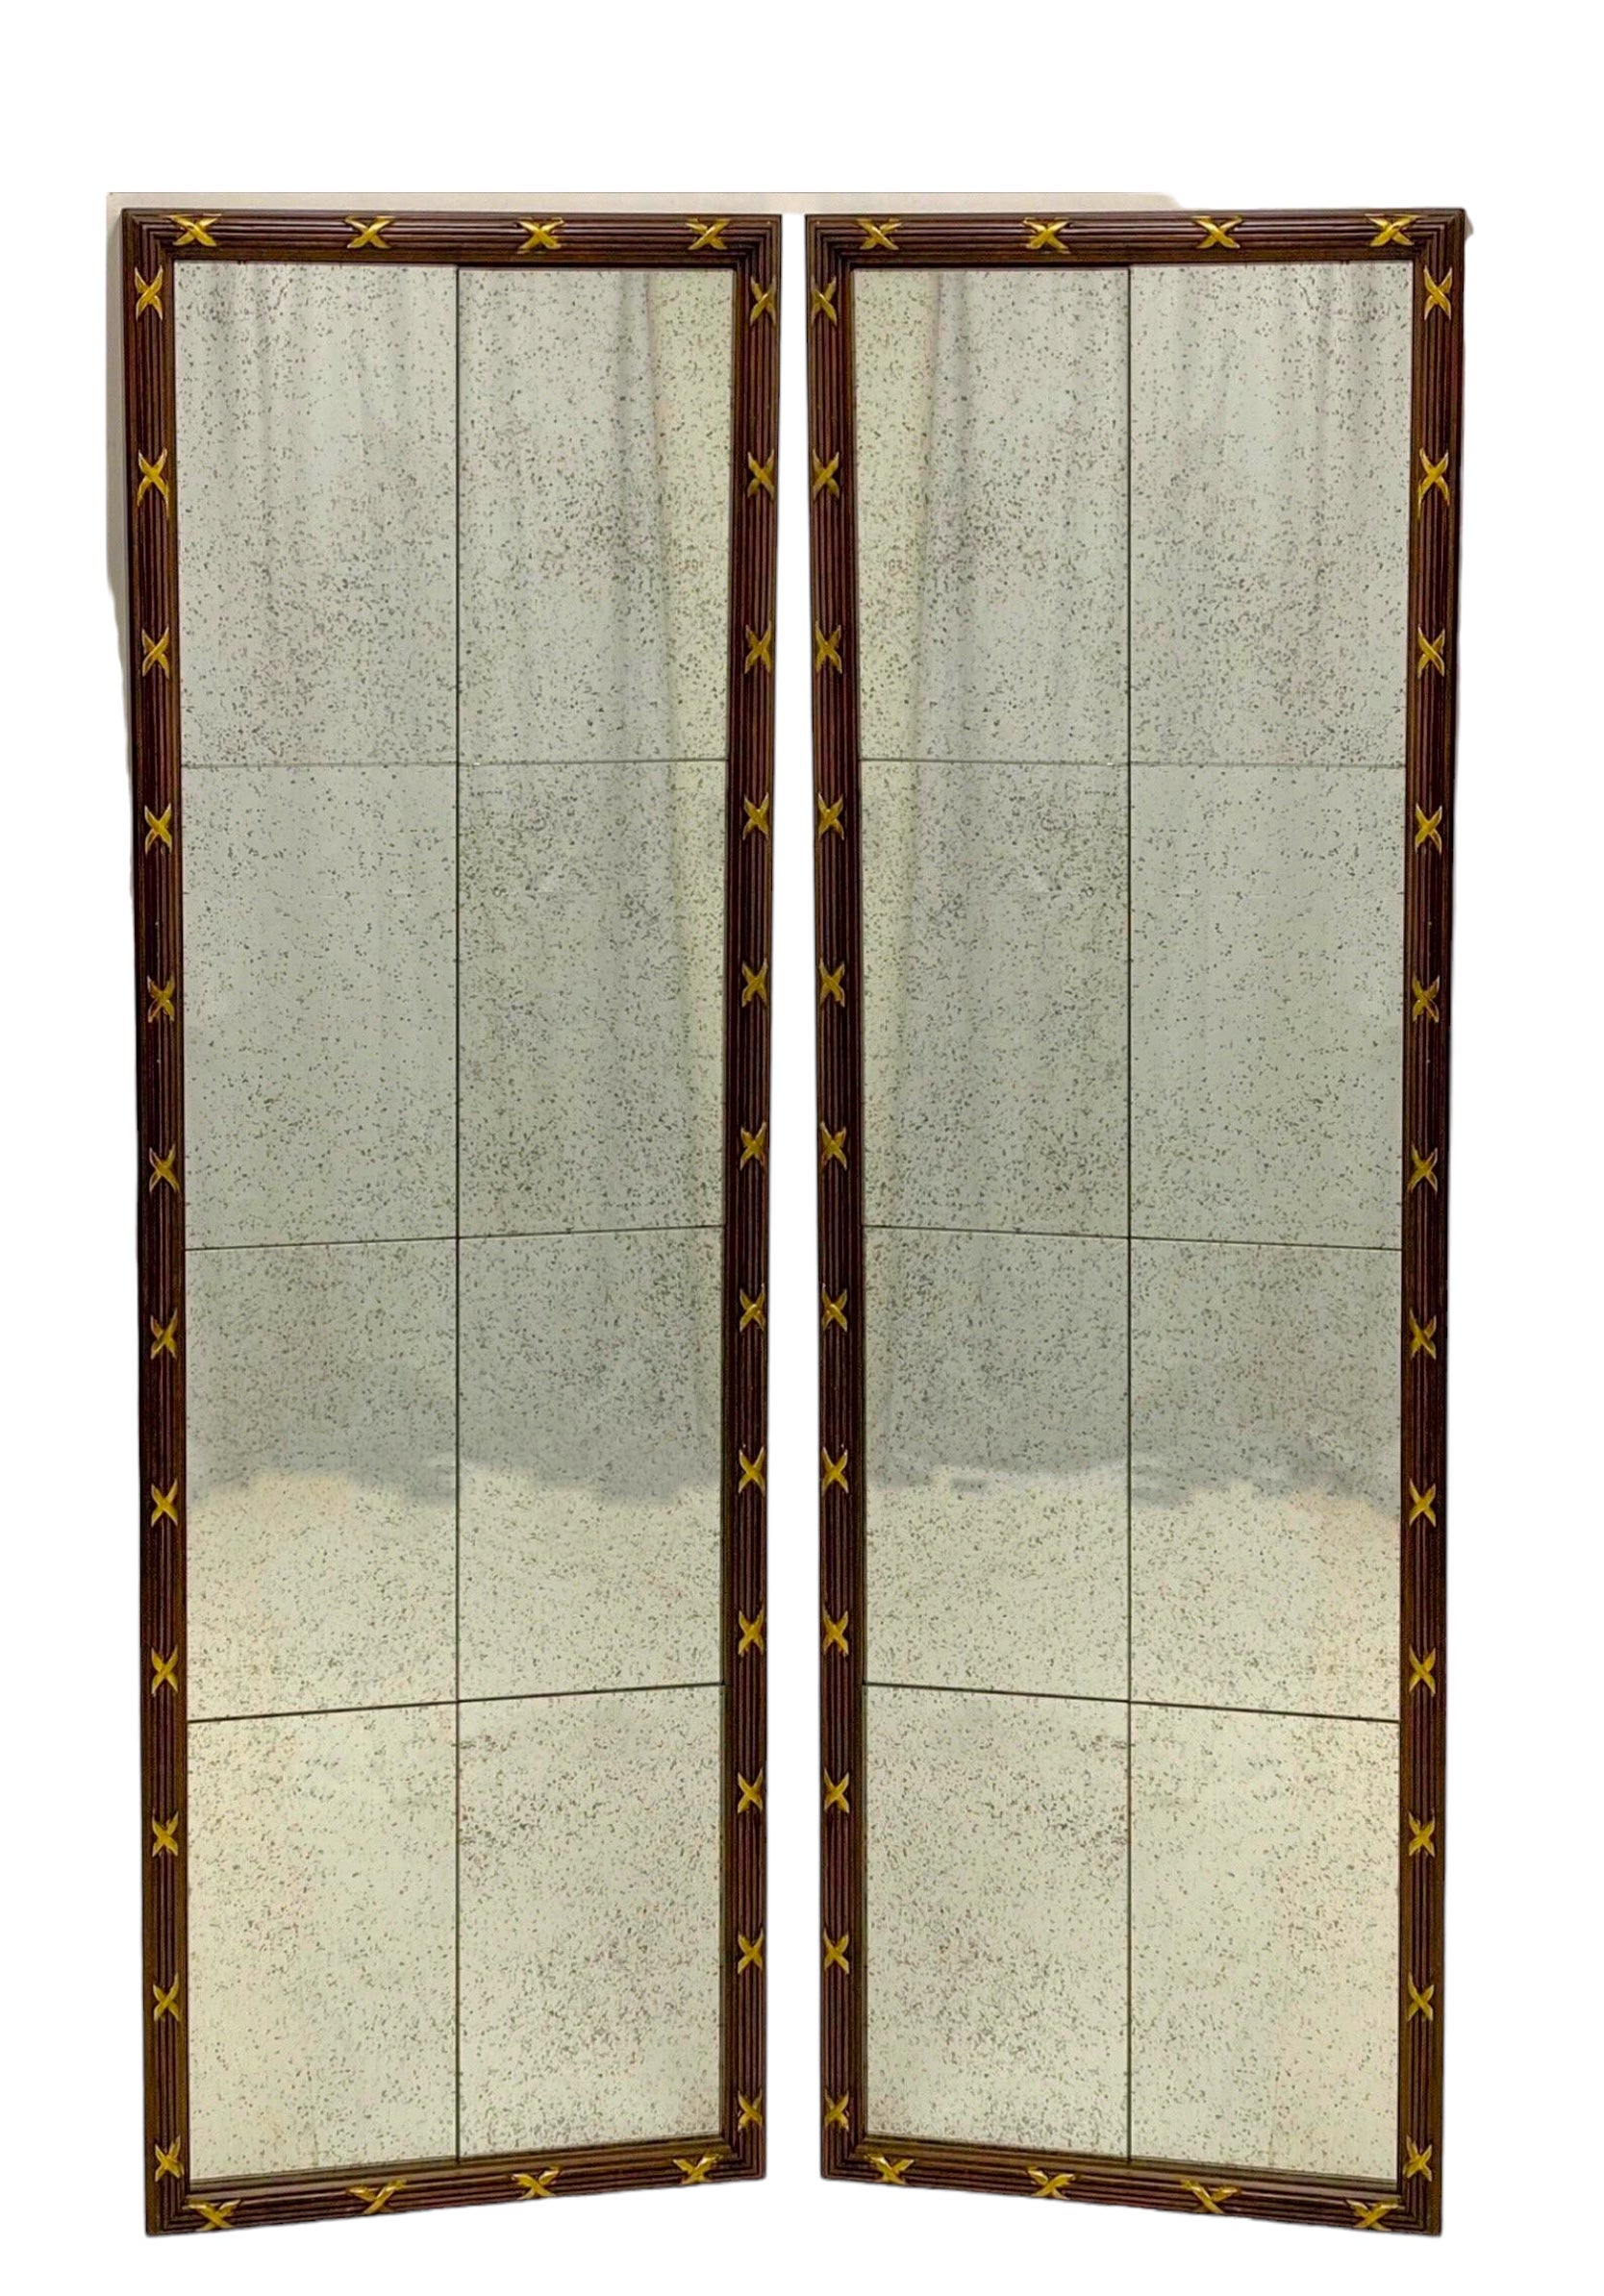 Dies ist ein Paar hohe Spiegel im neoklassizistischen Stil. Das Glas ist absichtlich beschädigt. Der geschnitzte Rahmen scheint aus Mahagoni mit vergoldeten Akzenten zu sein. Sie sind nicht gekennzeichnet.